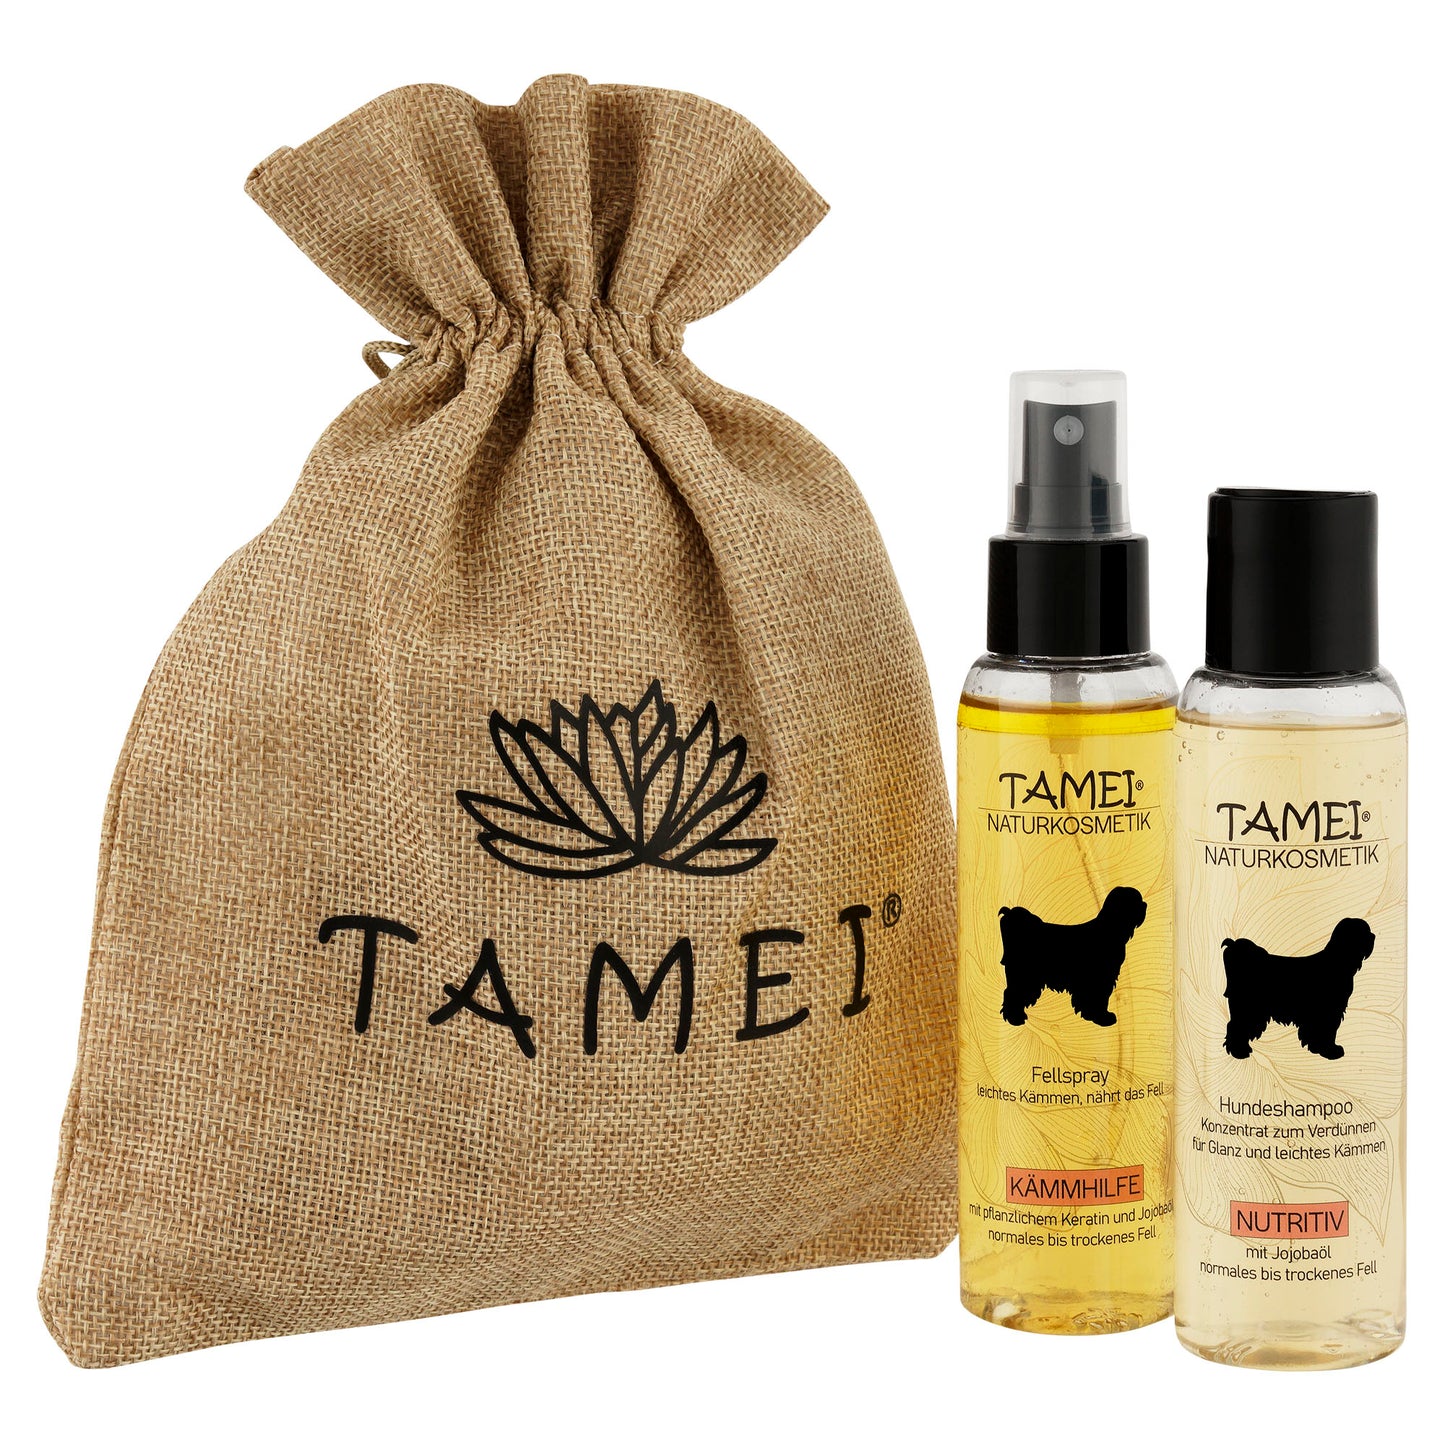 Tamei Geschenkset mit Duft Shampoo u. Fellspray | Set per 3 Stück